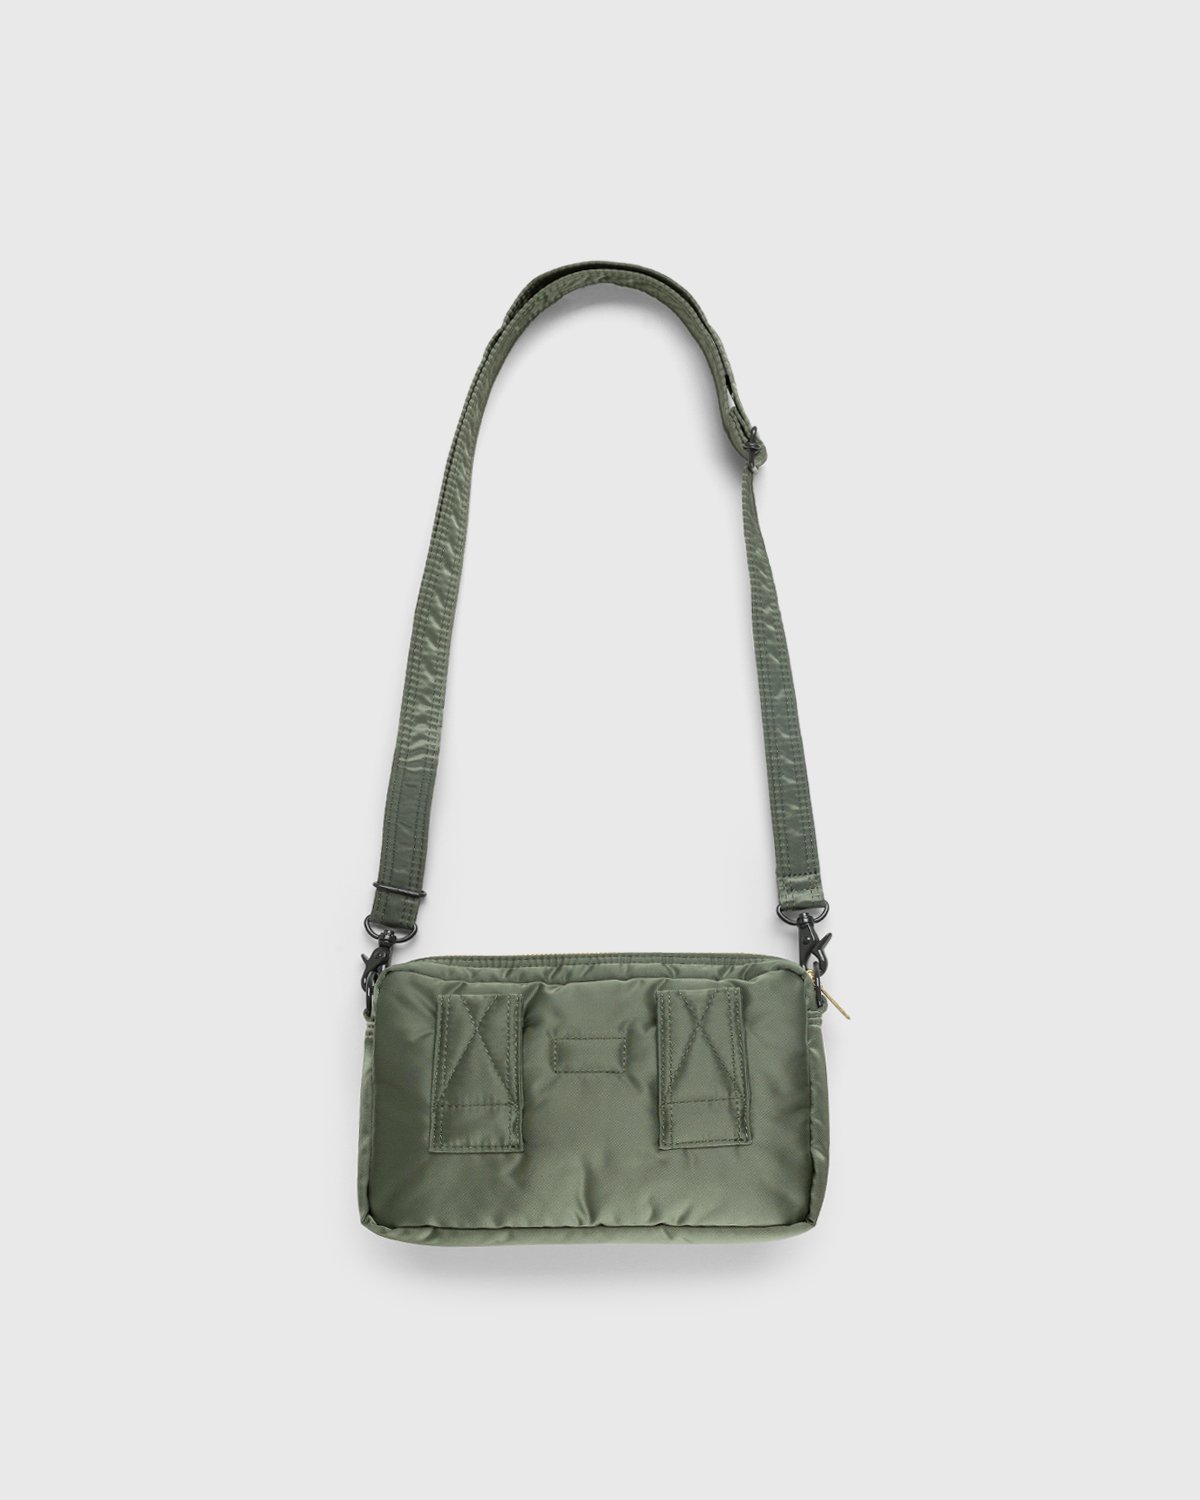 Porter-Yoshida & Co. - Tanker Shoulder Bag Sage Green - Accessories - Green - Image 2